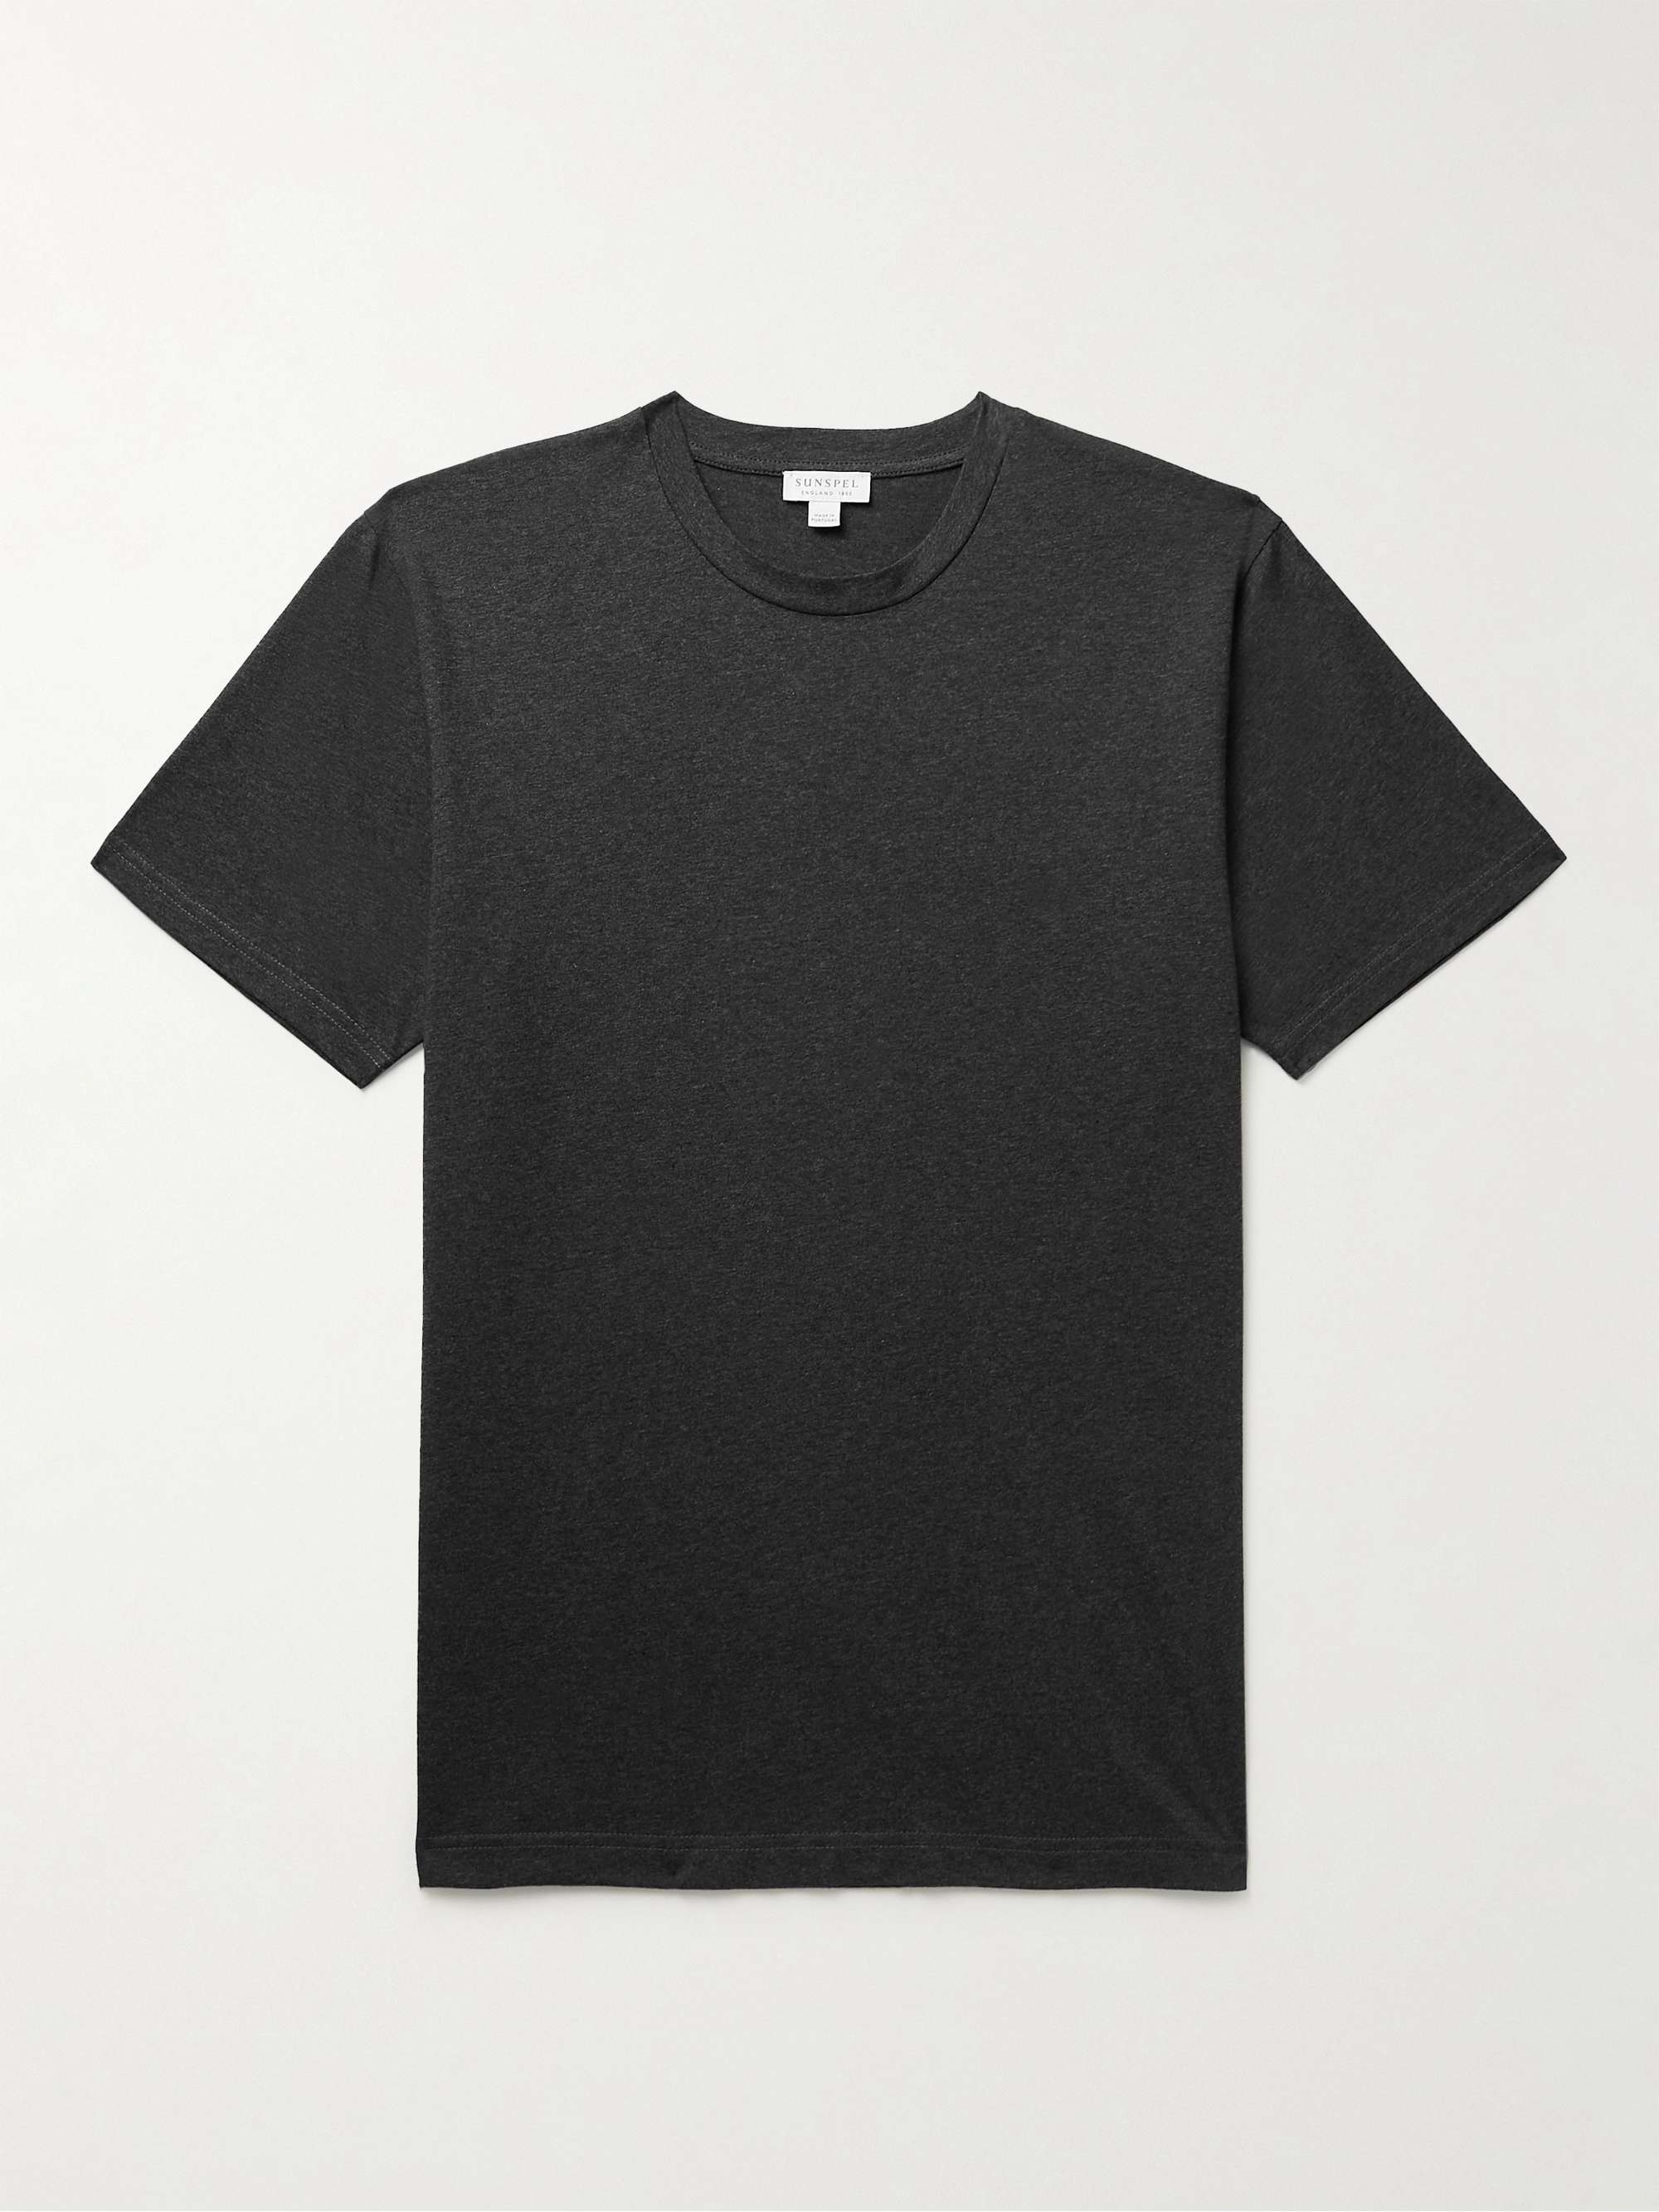 SUNSPEL Riviera Cotton-Jersey T-Shirt